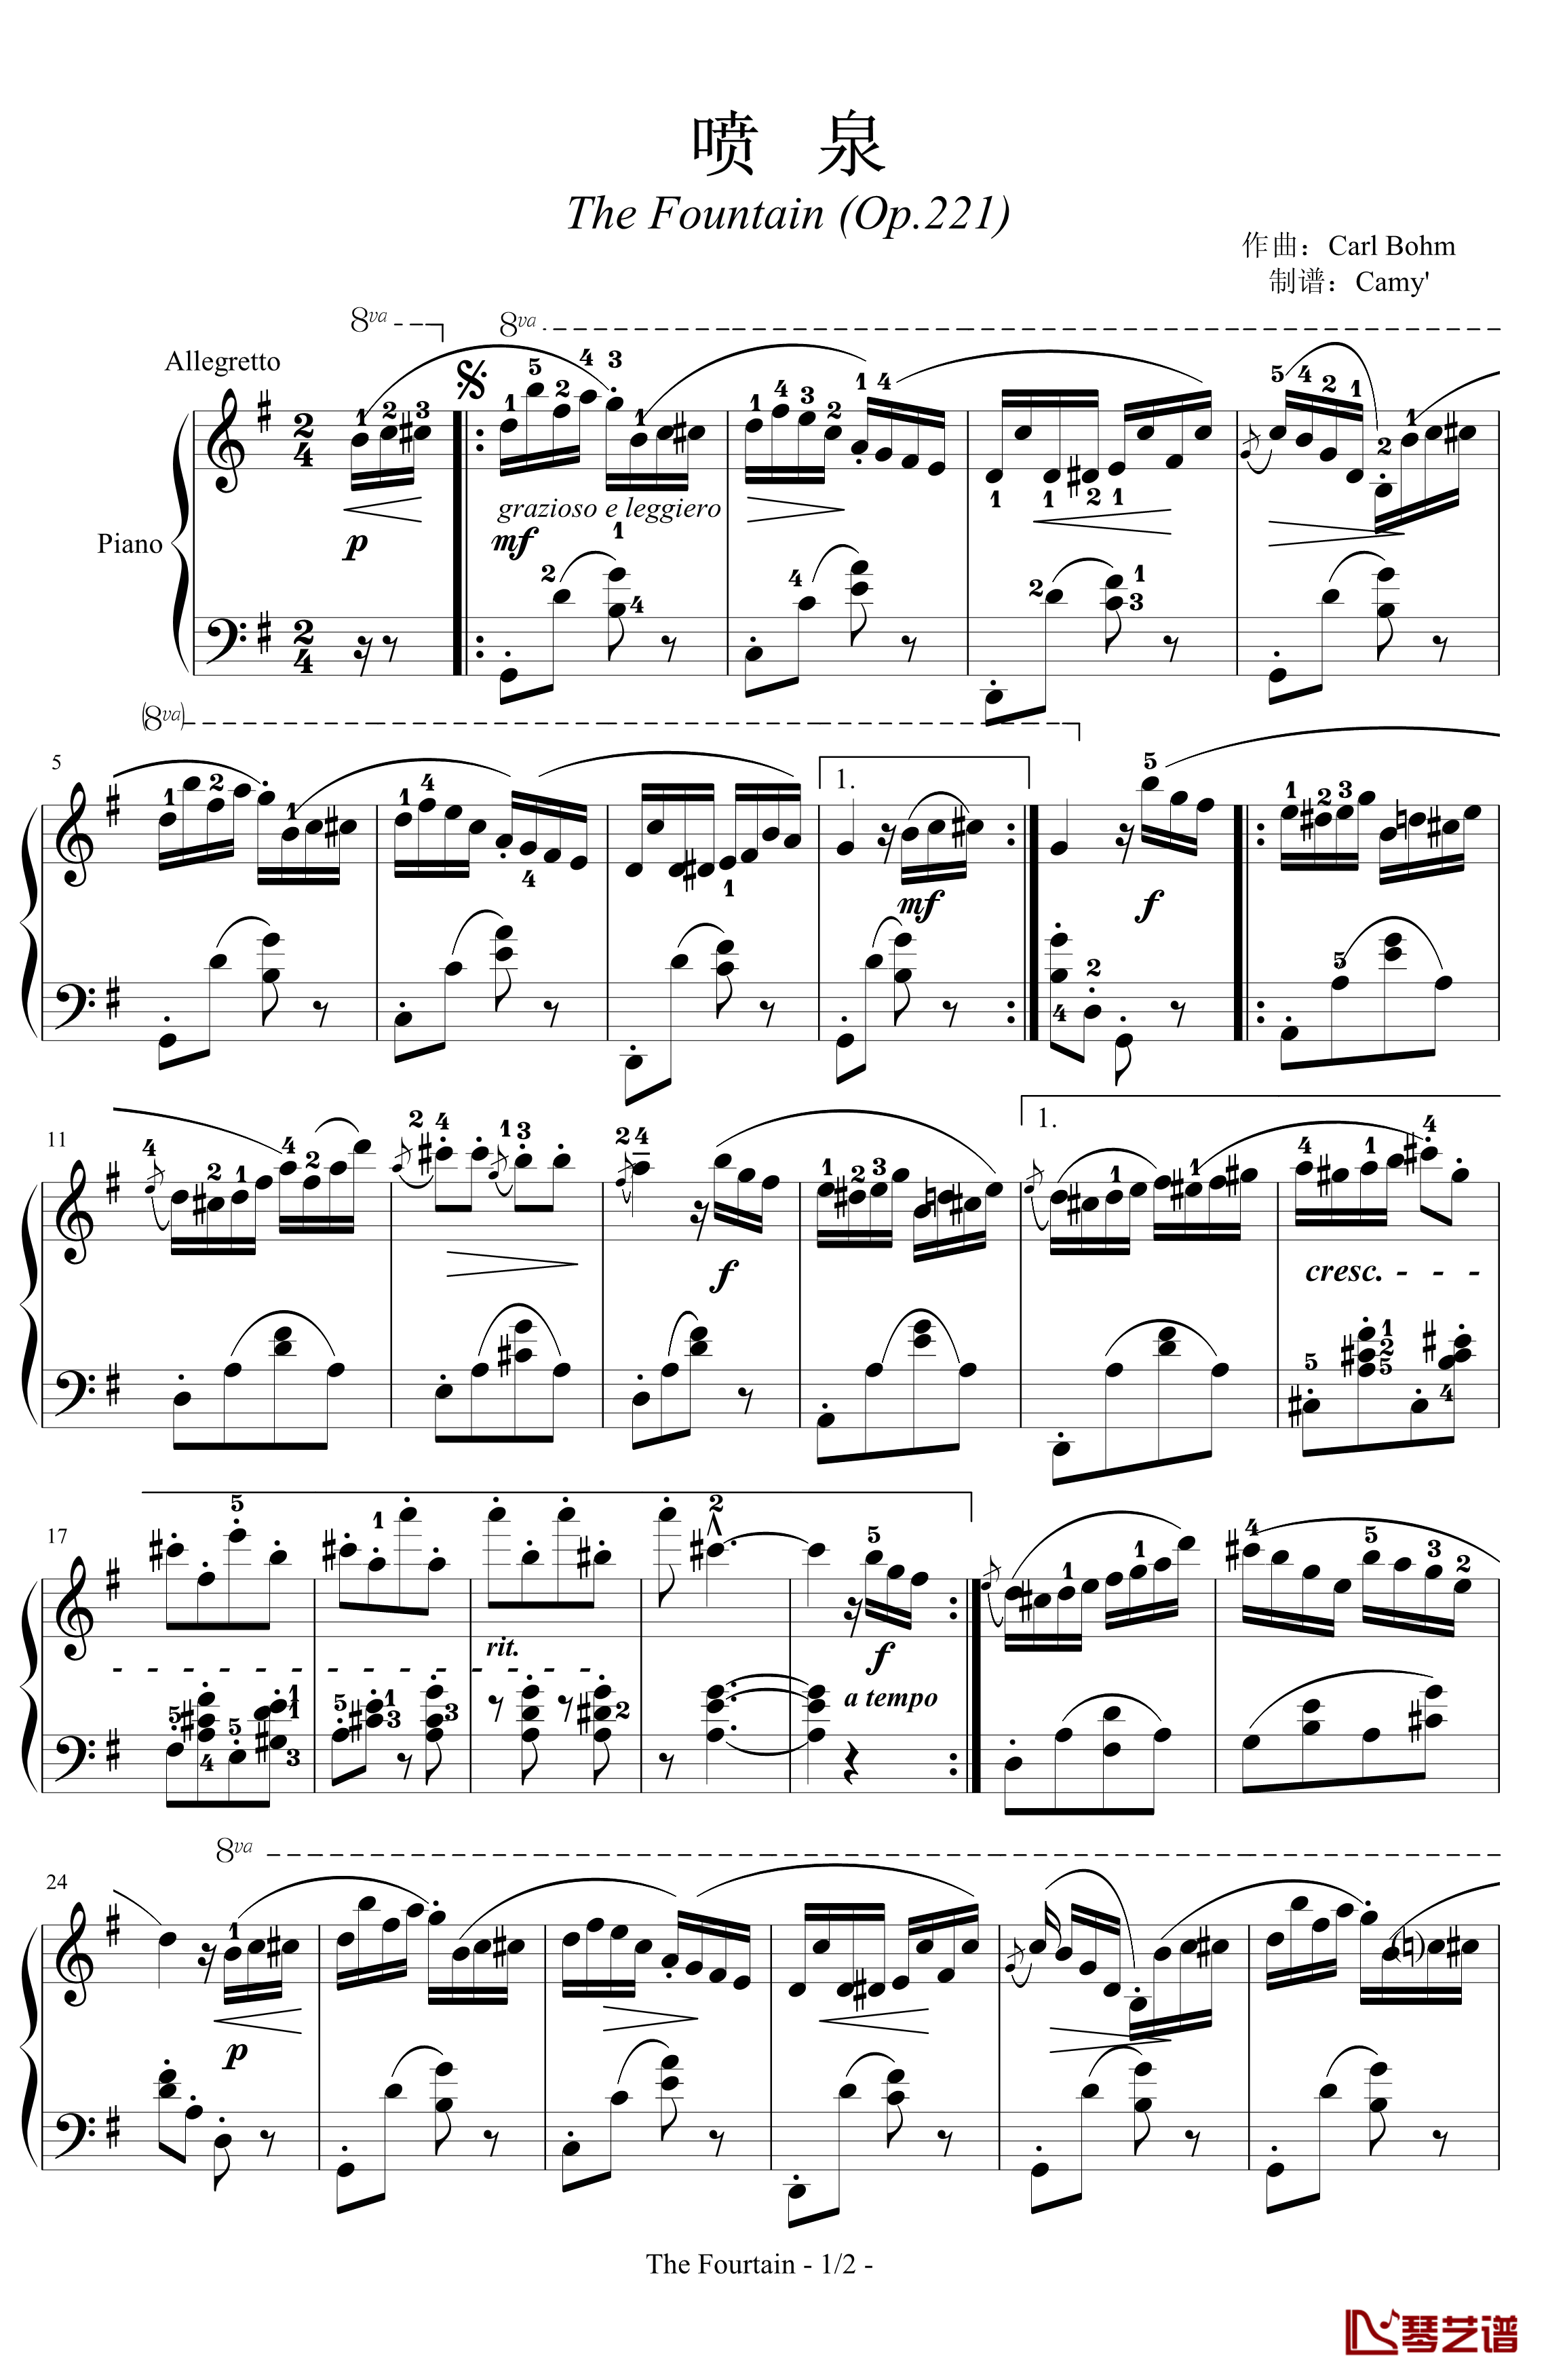 喷泉钢琴谱-带指法-卡尔博姆-Carl Bohm1